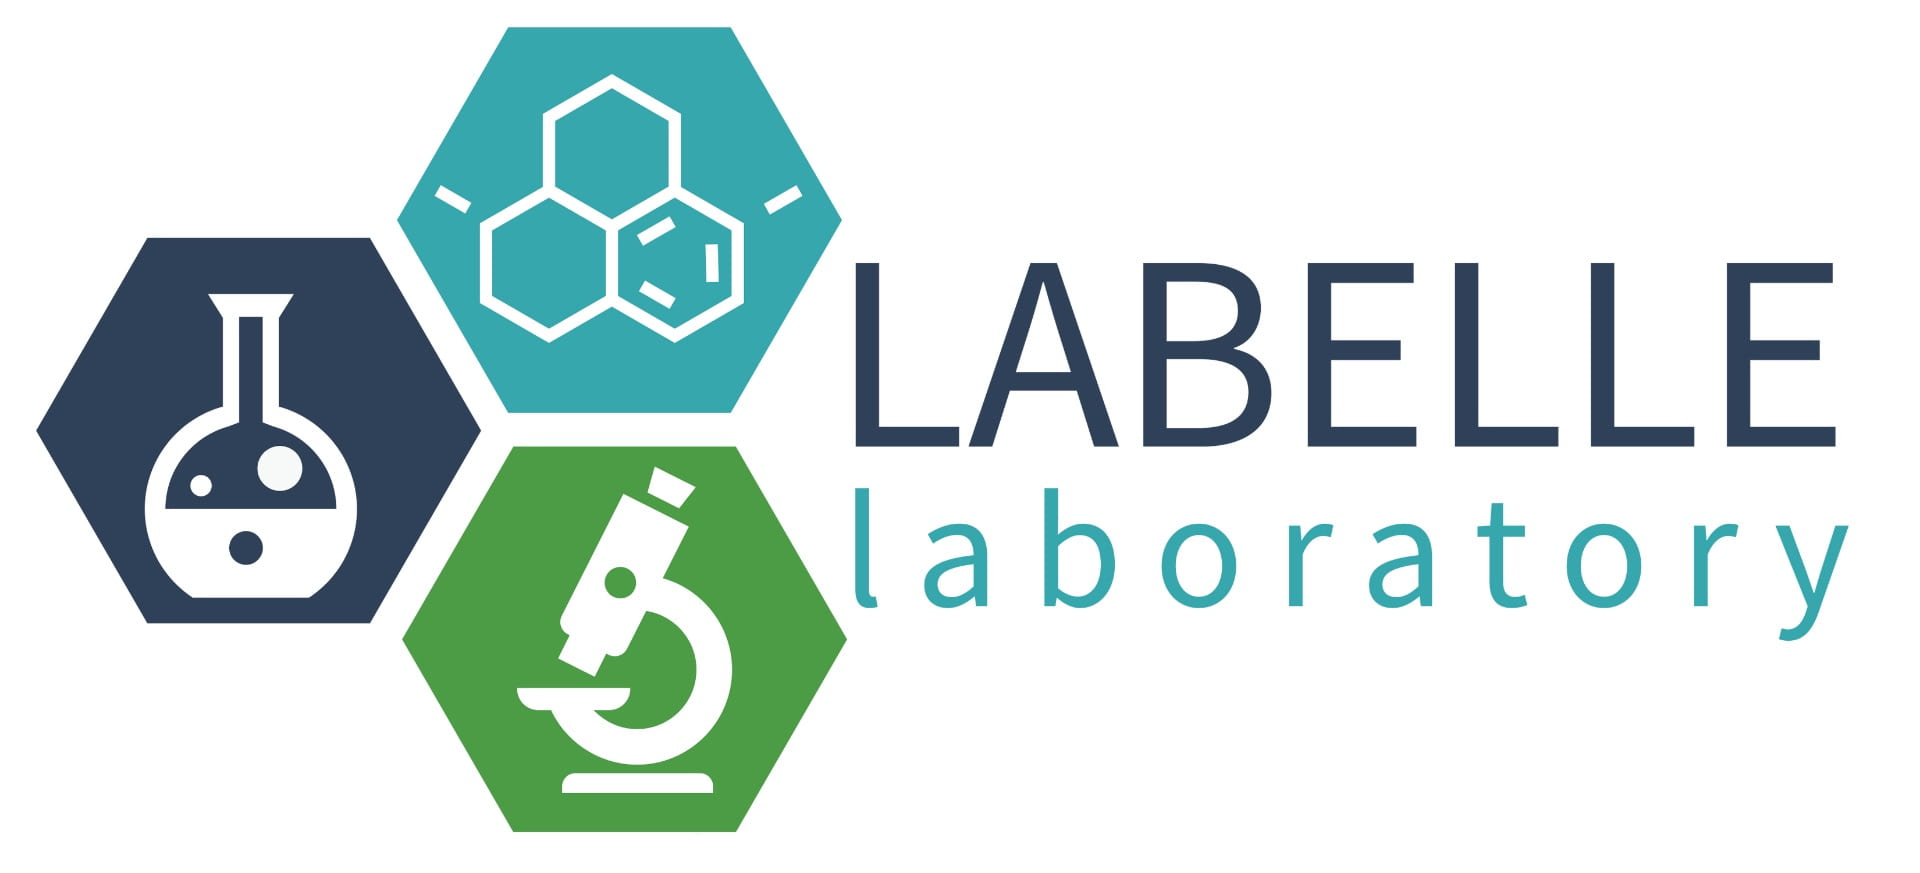 labelle lab